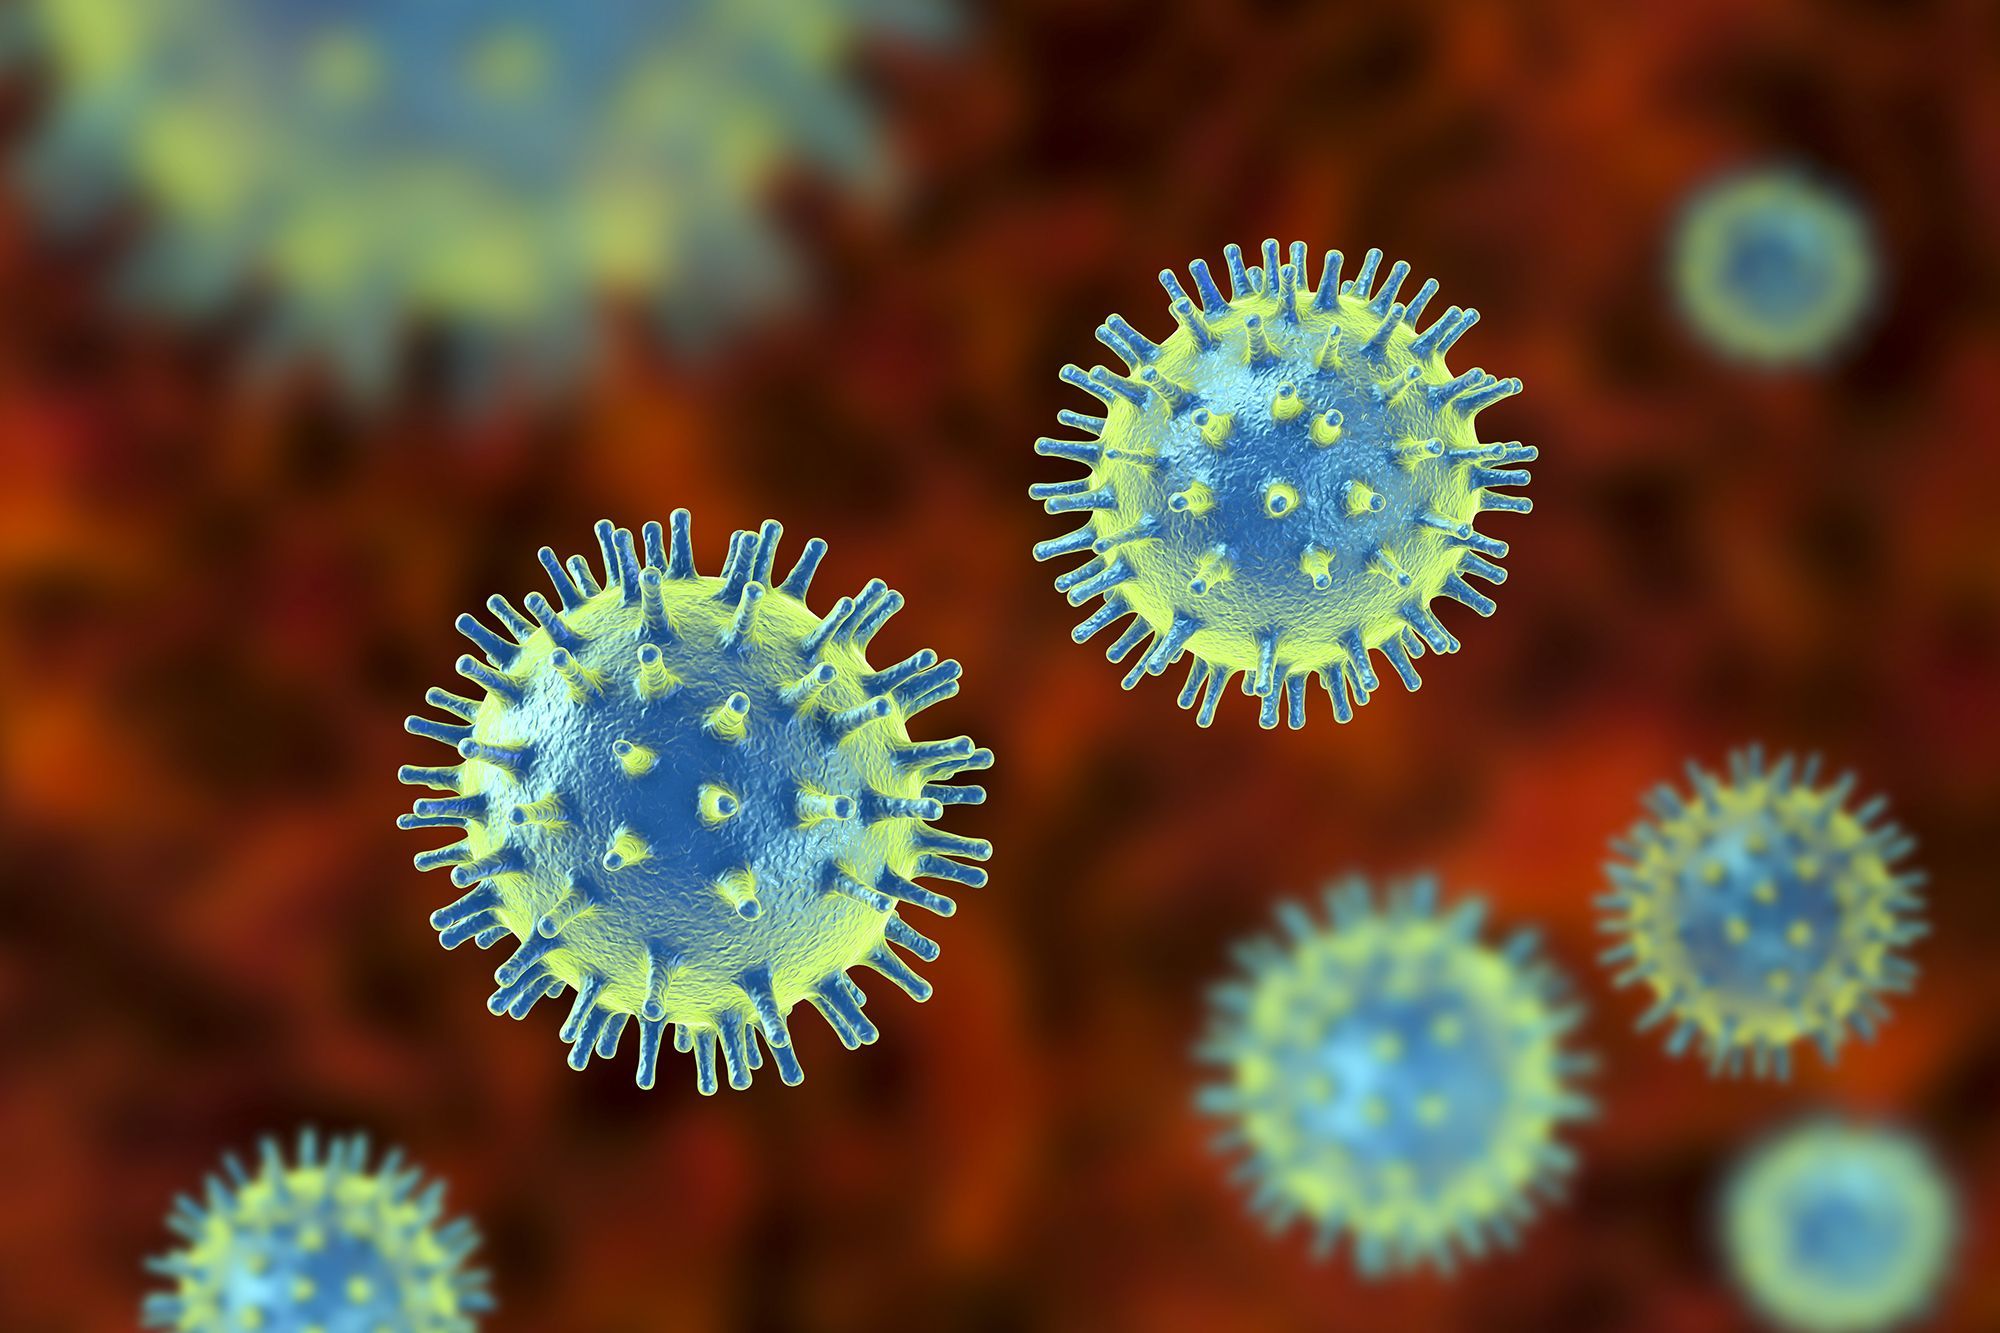 [Influenza virus]